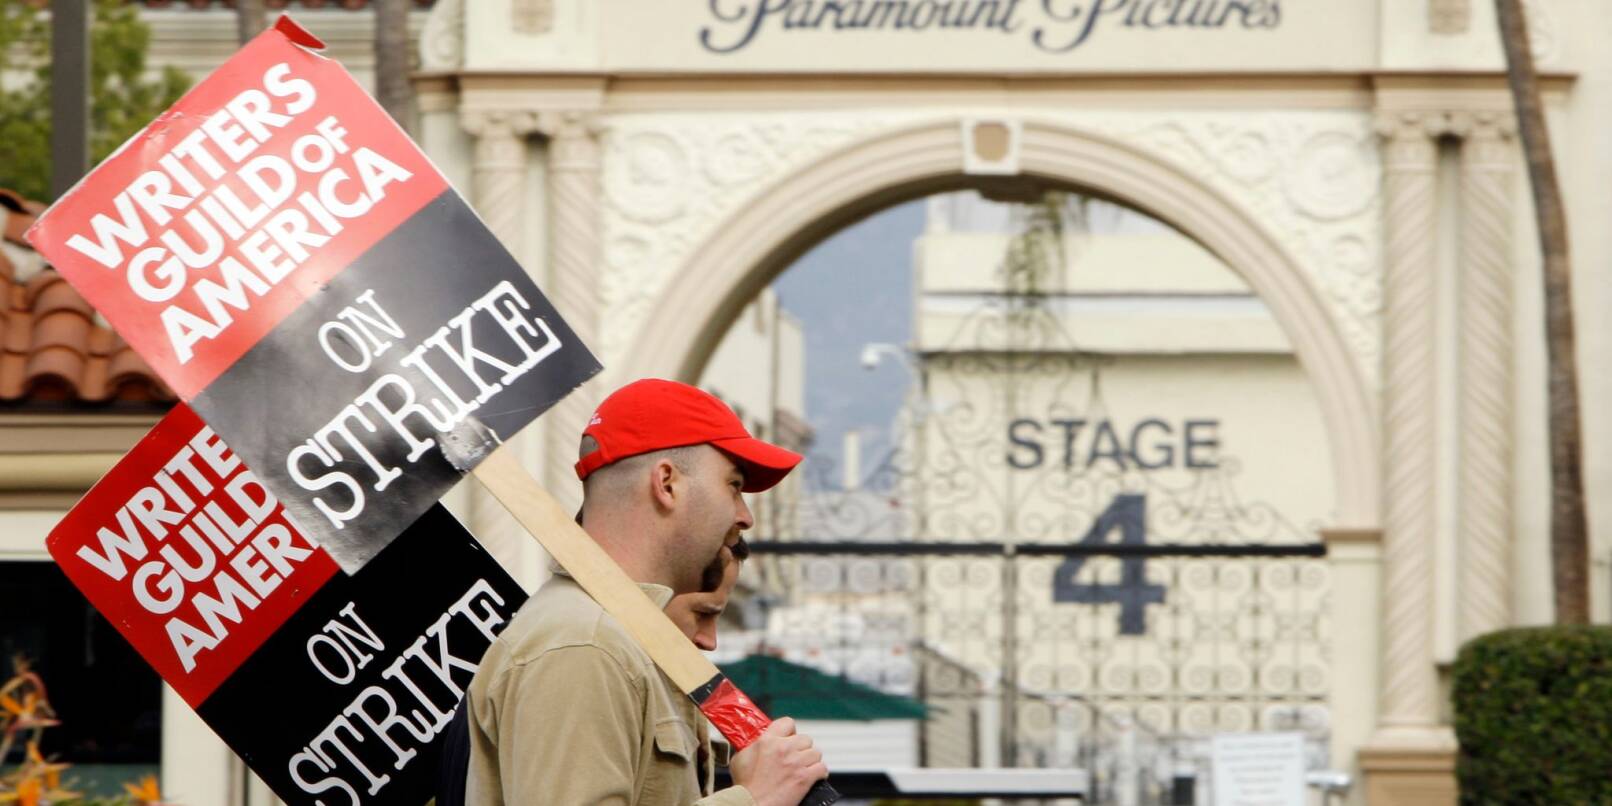 Streikende Film- und Fernsehautoren demonstrieren am 23. Januar 2008 vor den Paramount Studios in Los Angeles.